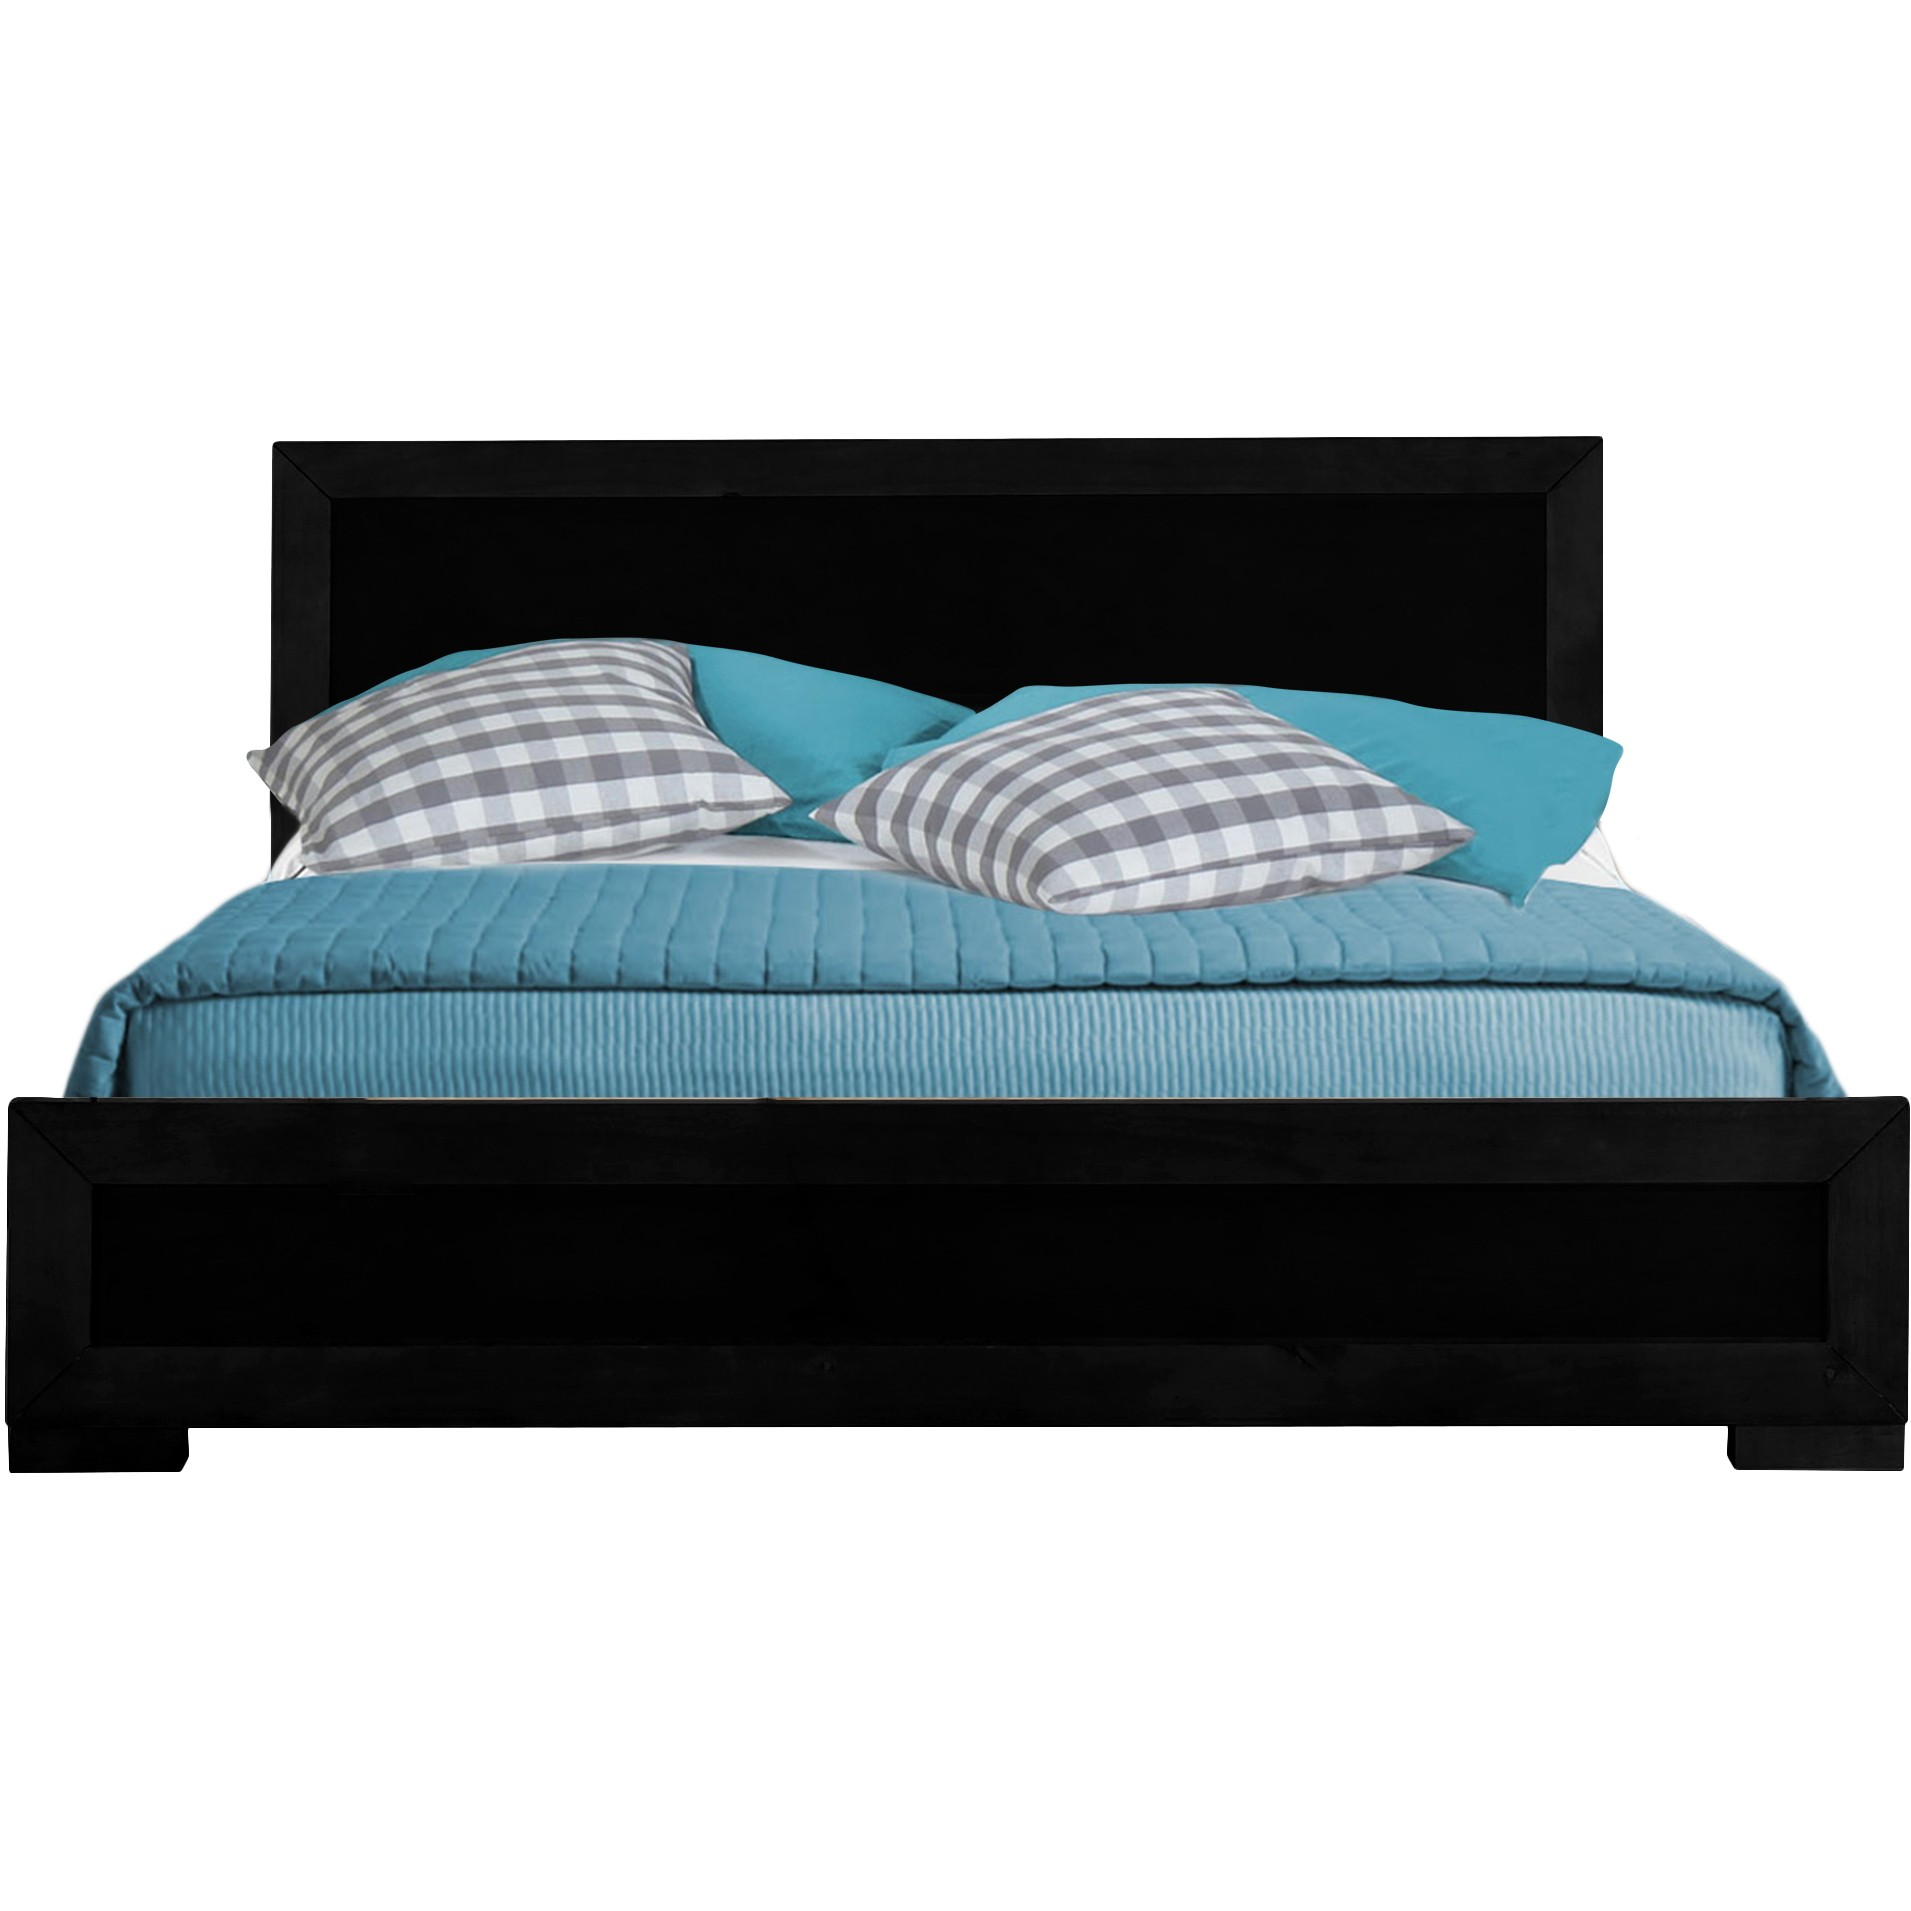 Black Wood Full Platform Bed-397072-1